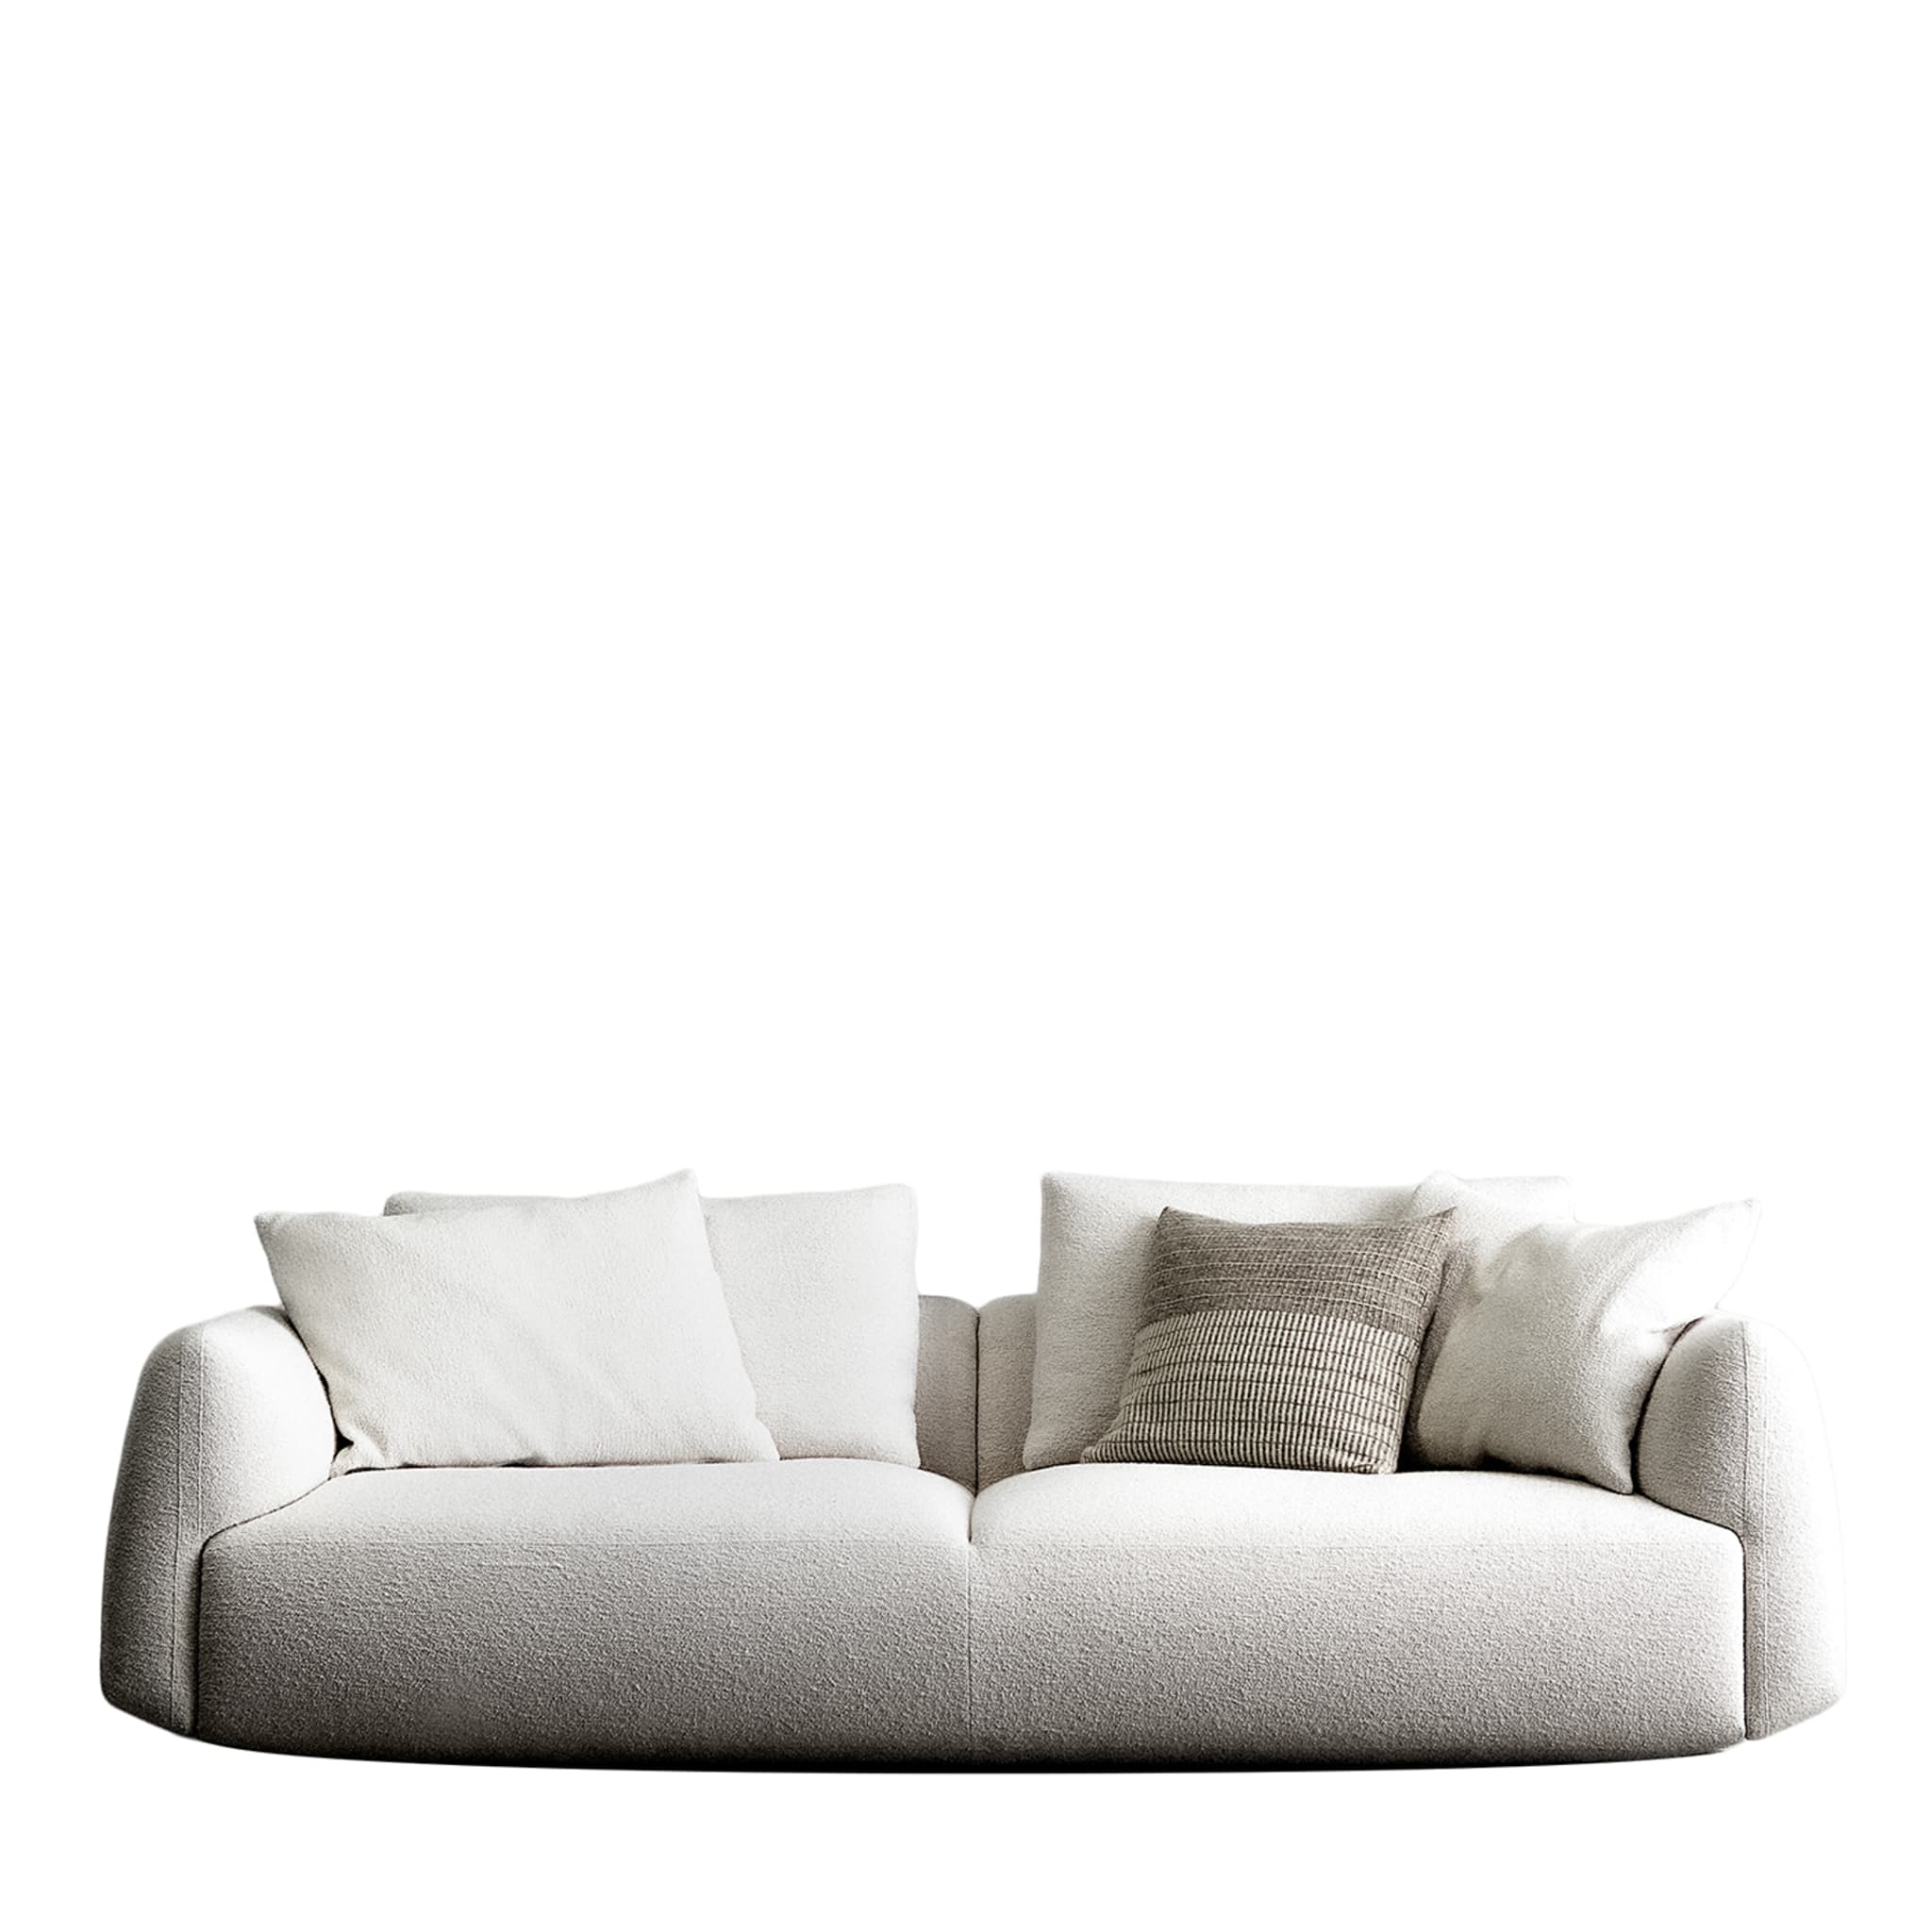 Naxos 3-sitzer weißes sofa von Ludovica + Roberto Palomba - Hauptansicht